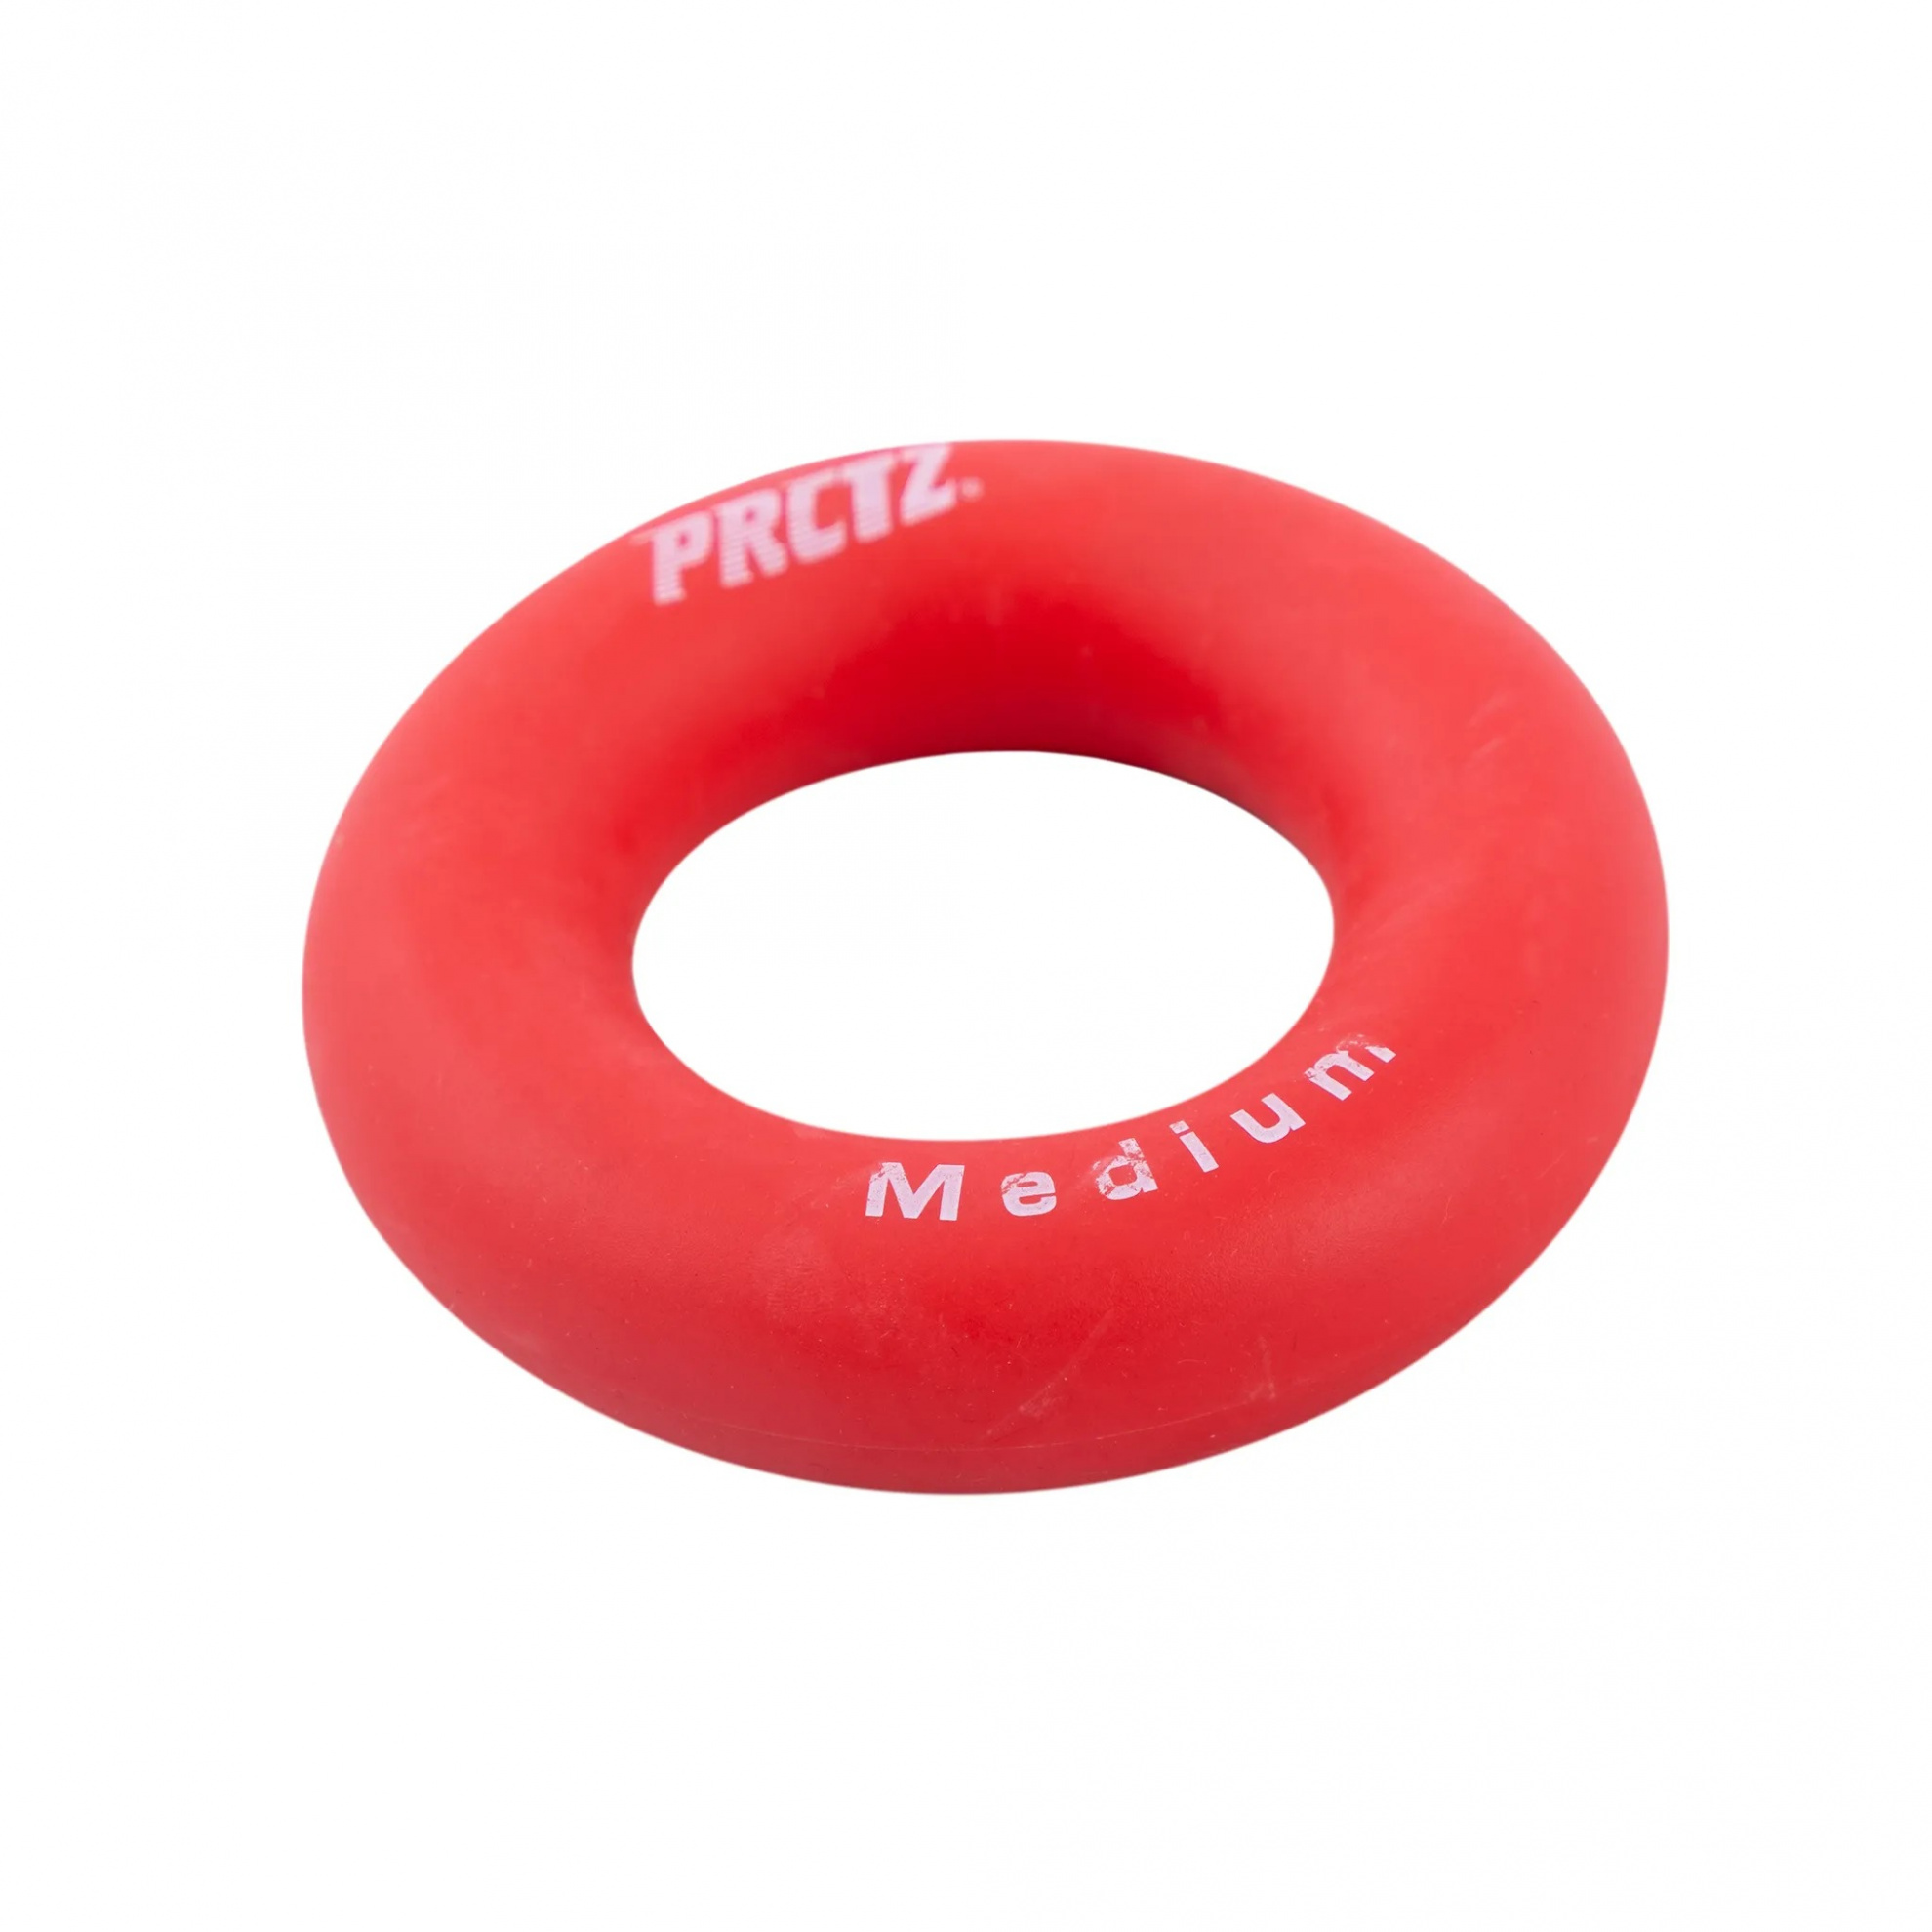 Эспандер-кольцо PRCTZ Power Gripping ring medium, среднее сопротивление